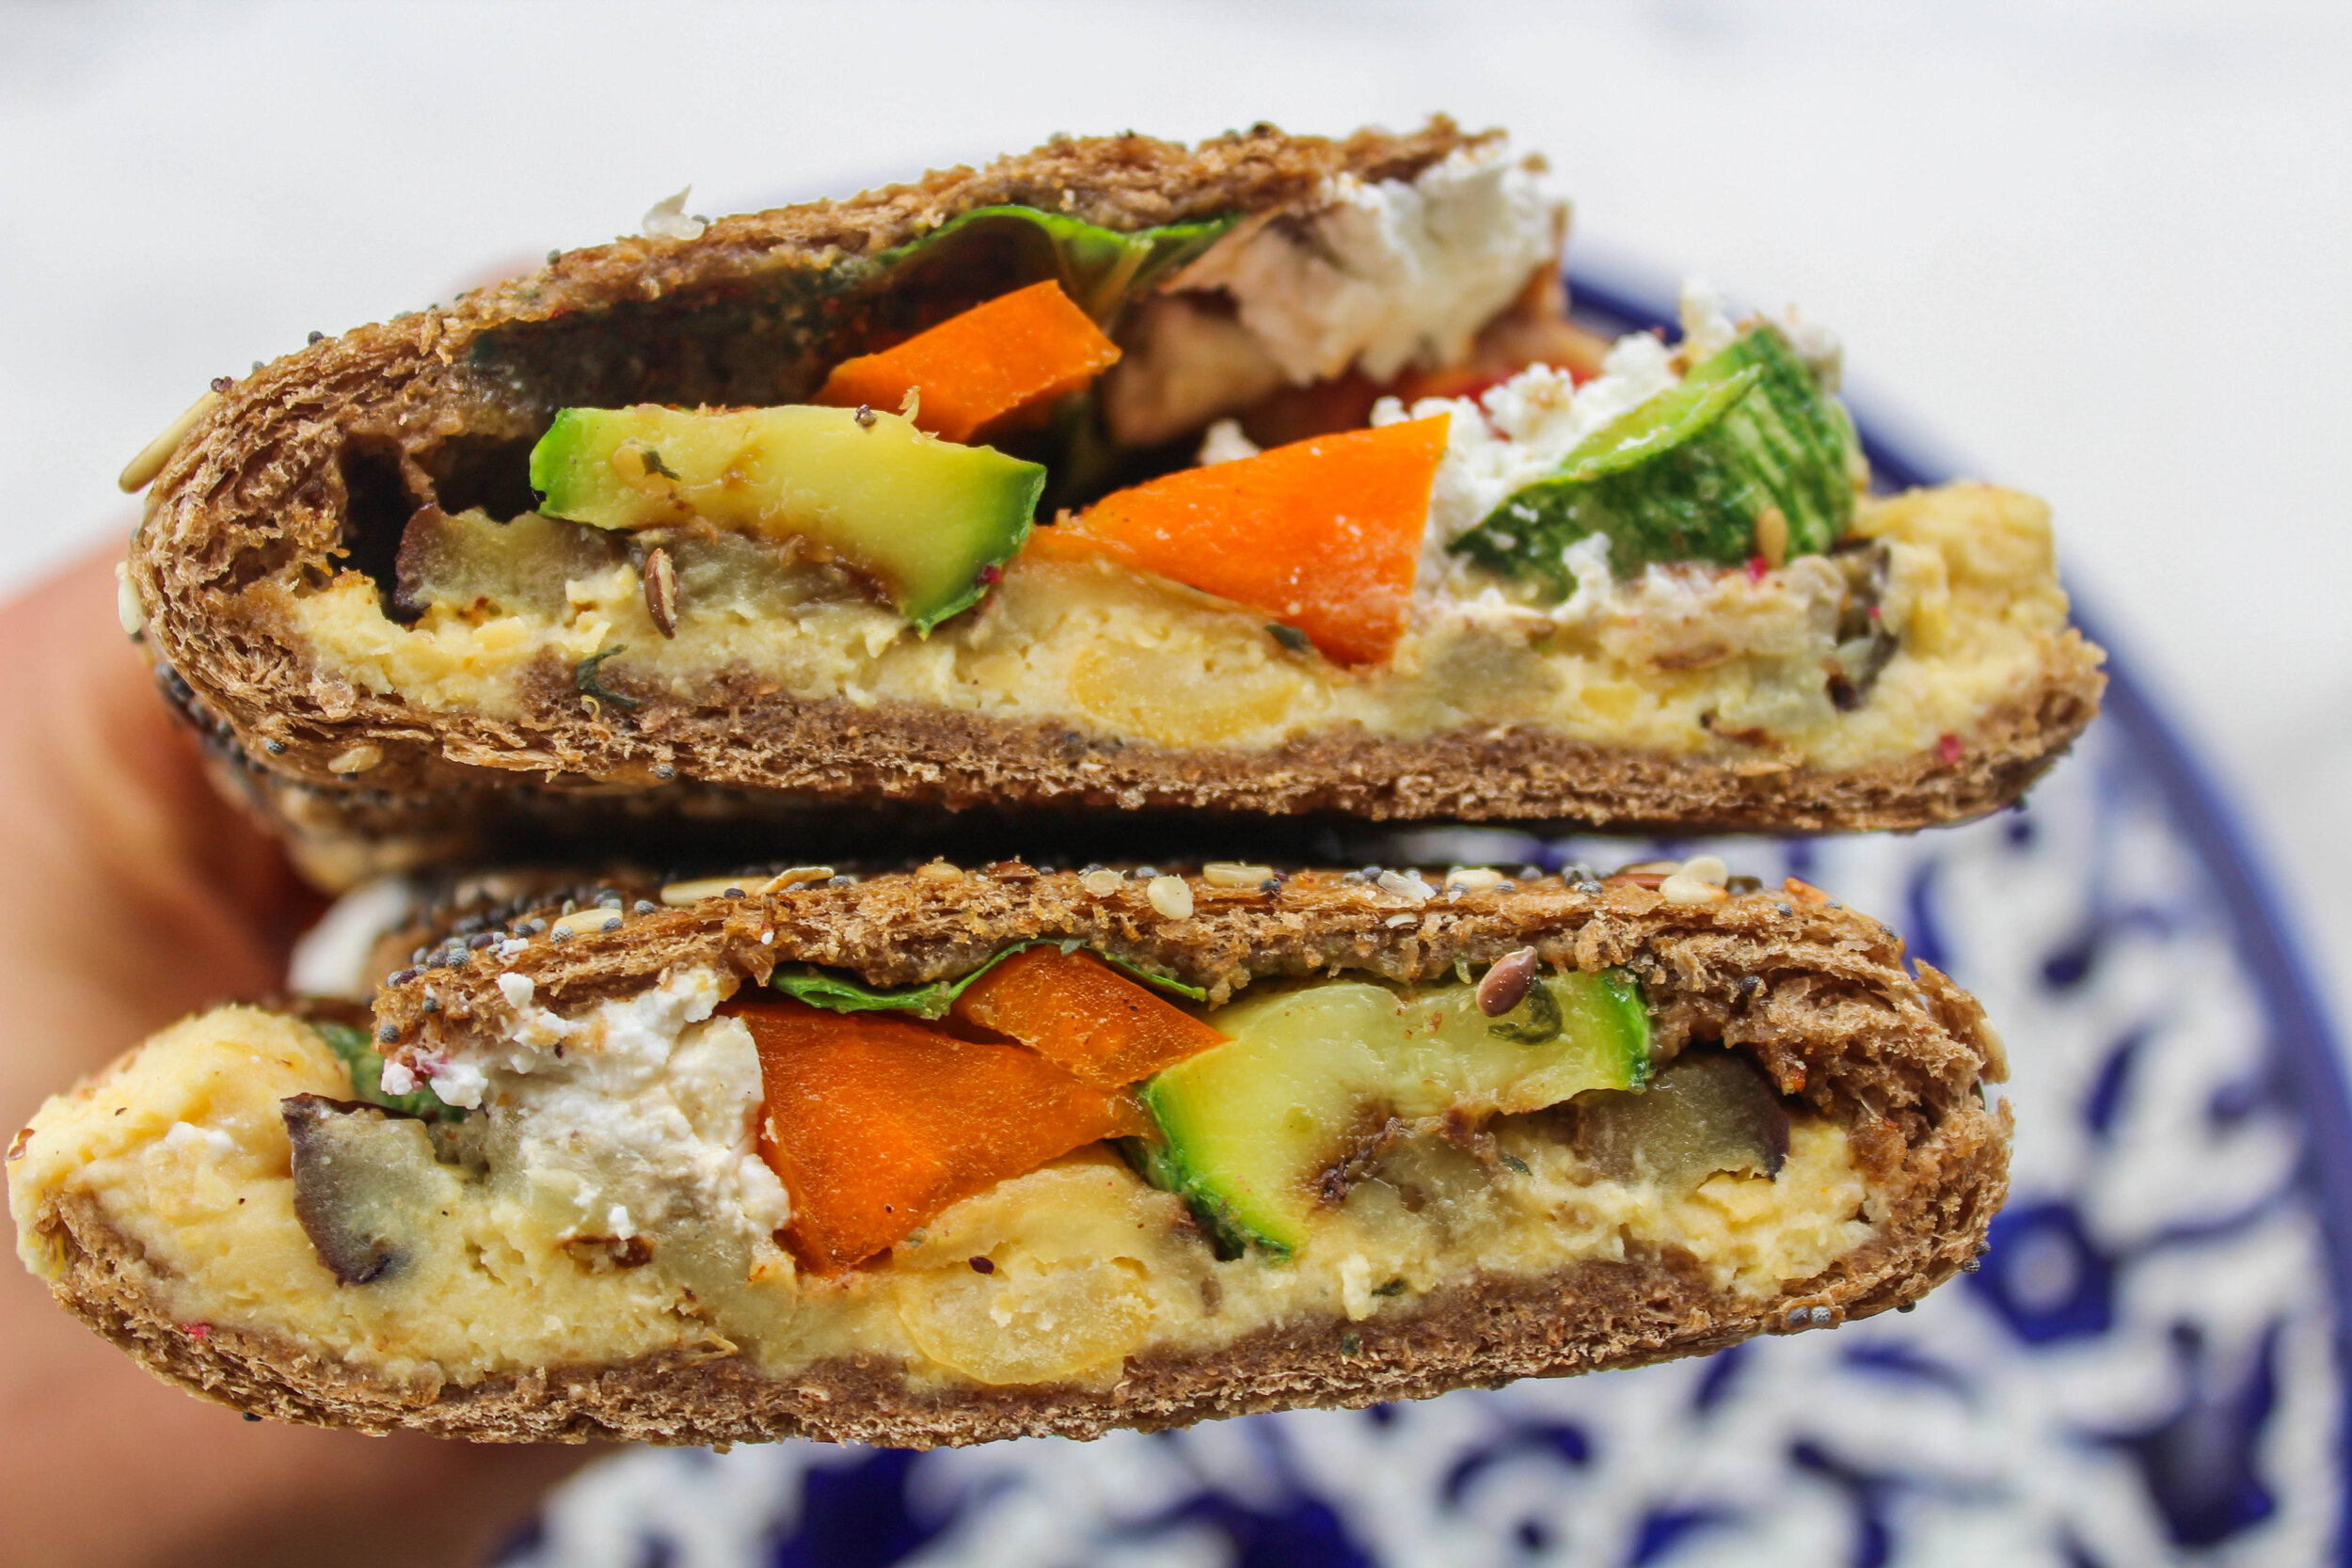  Mediterranean grilled veggie sandwich   ساندويتش الخضار المشوية بنكهة متوسطية 